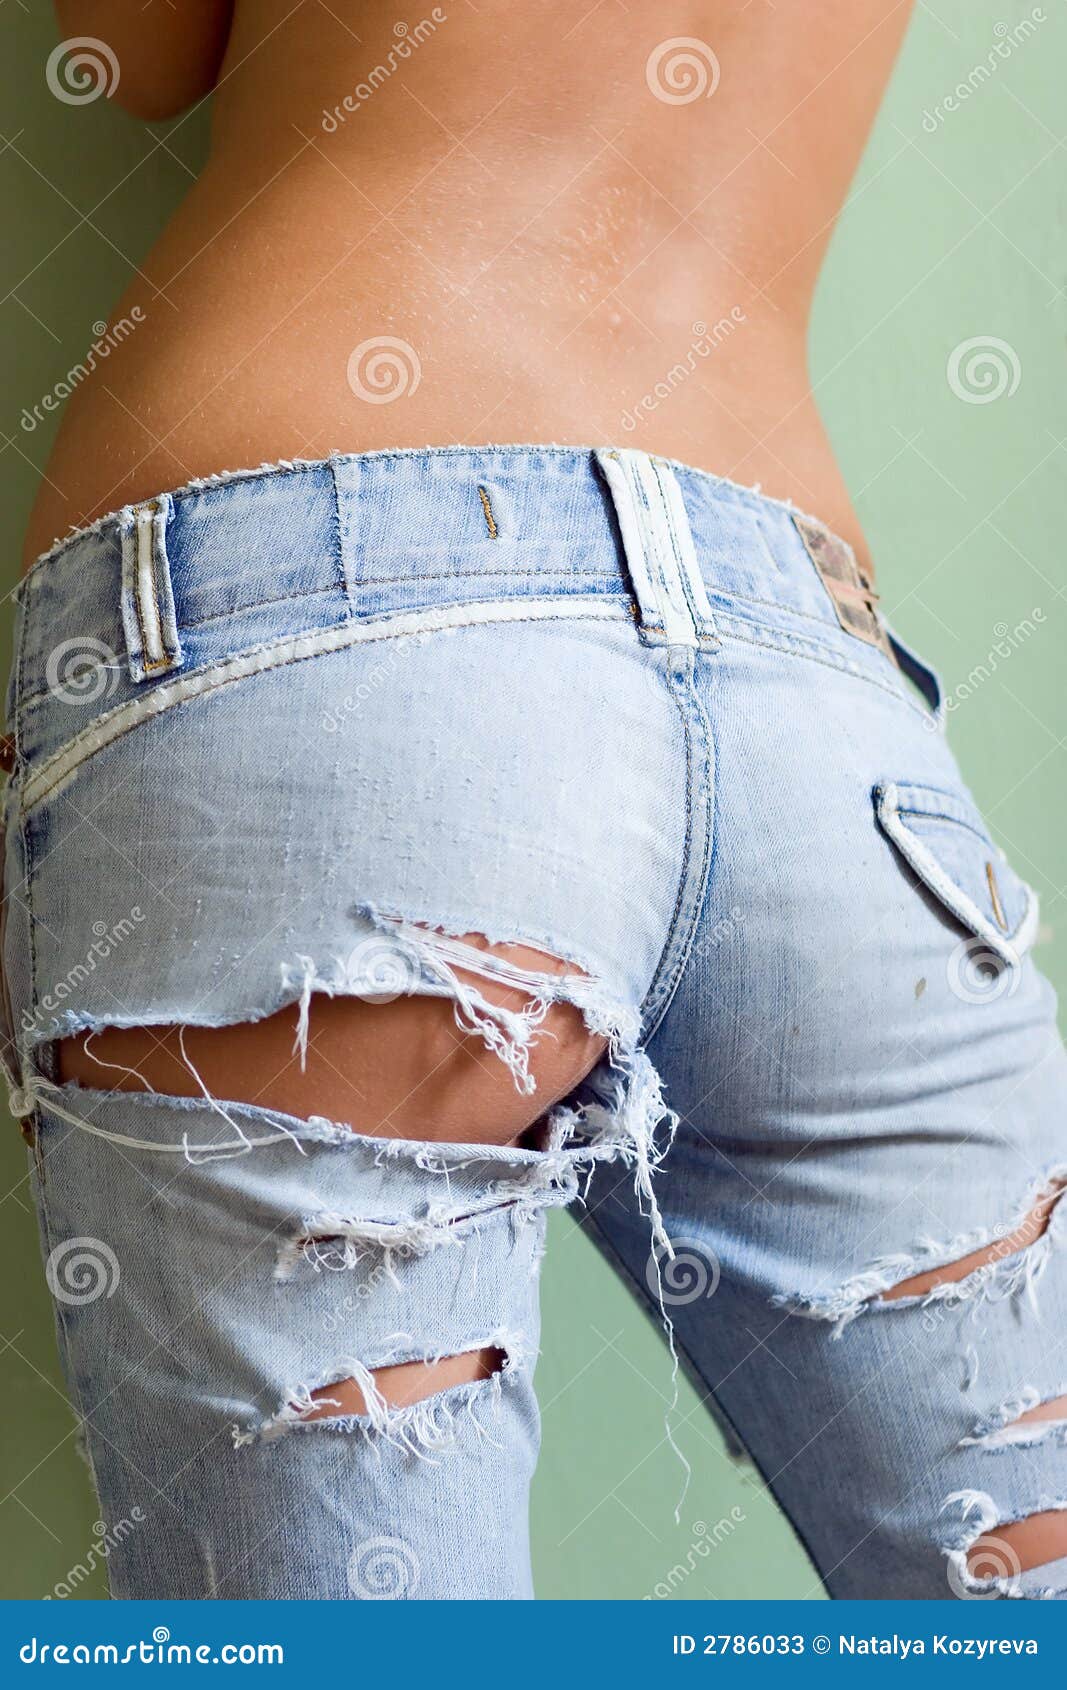 джинсы с дыркой на жопе фото 95